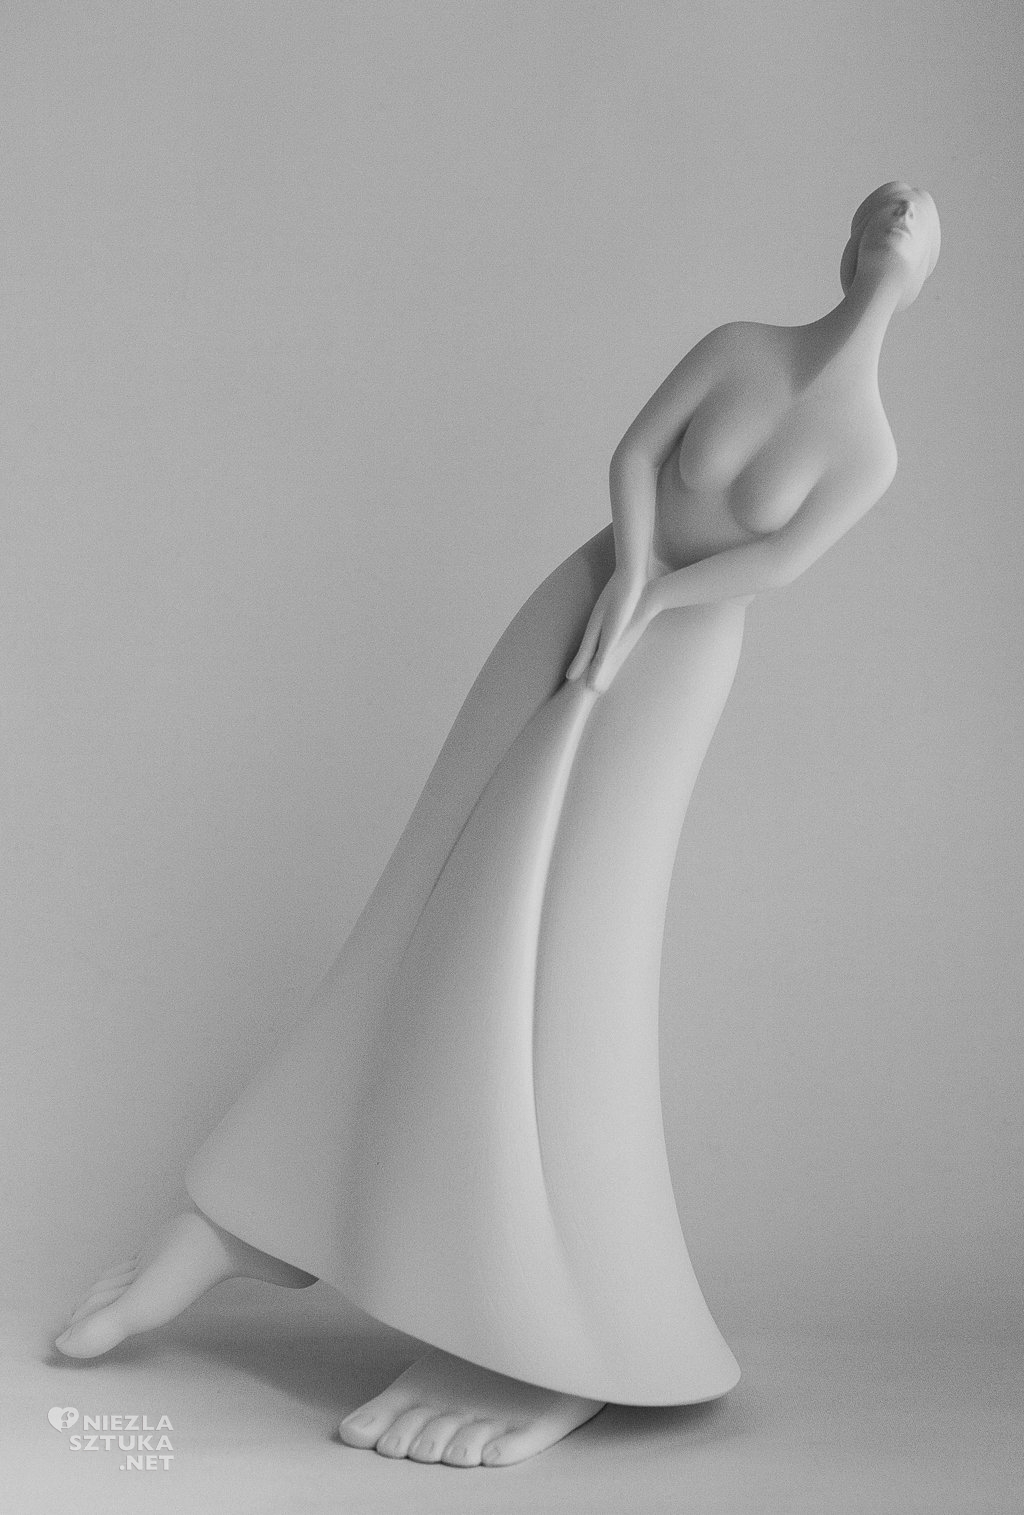 Andrea Bucci art rzeźba